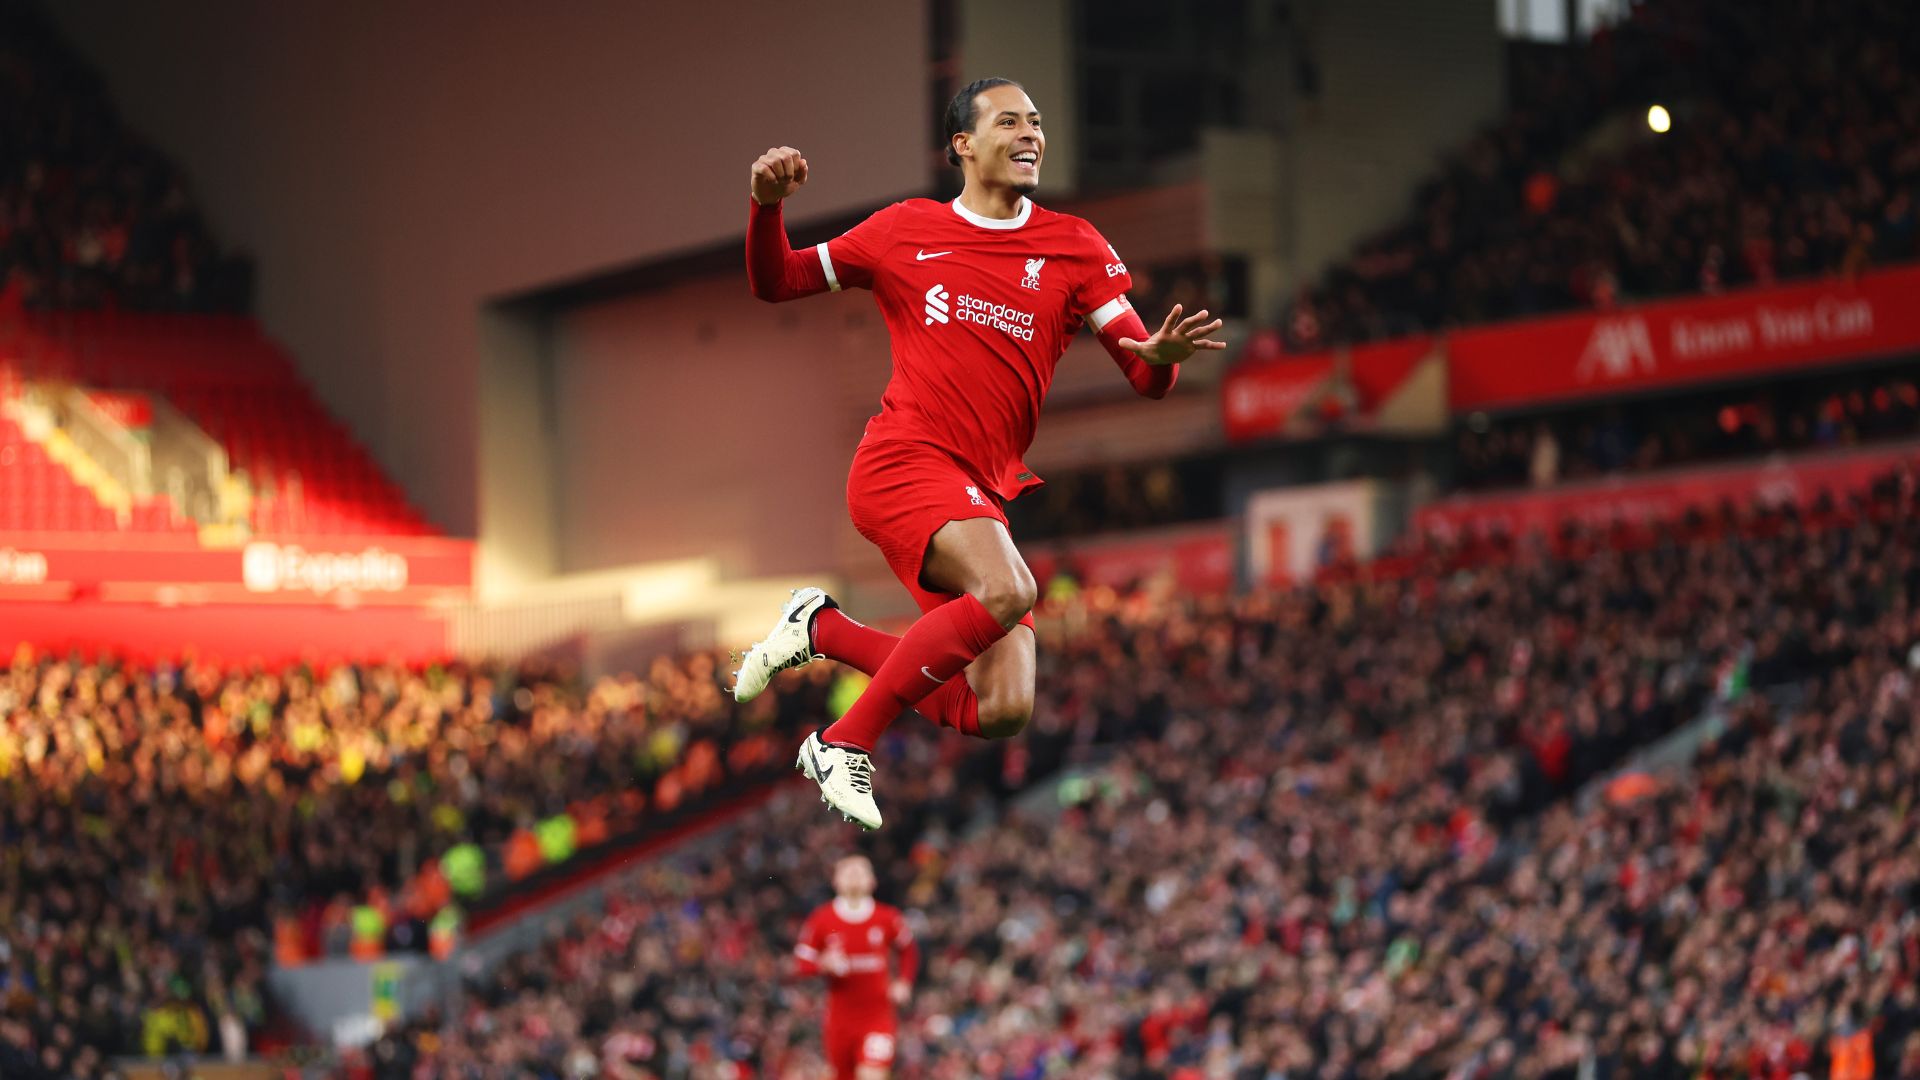 Van Dijk comemorando gol pelo Liverpool contra o Norwich (Crédito: Getty Images)